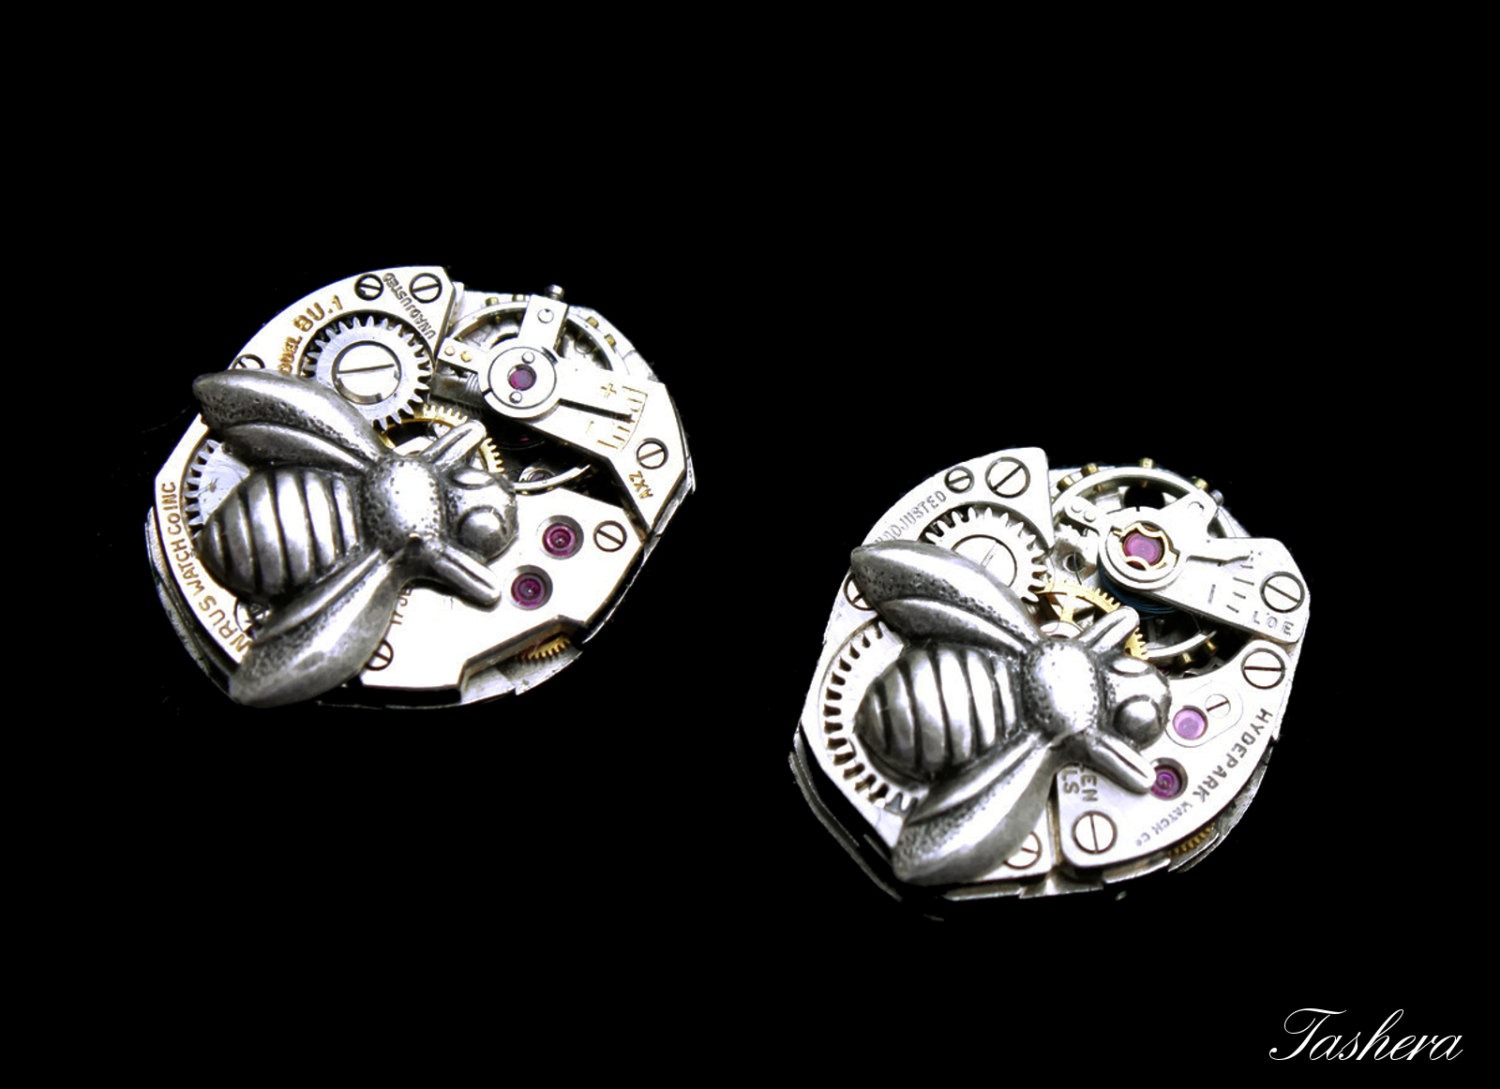 Bumble Bee Earrings, Steampunk Earrings, Vintage Watch Movement Earrings, Clockwork Earrings, Geekery, Industrial Jewelry, Steampunk Wedding steampunk buy now online